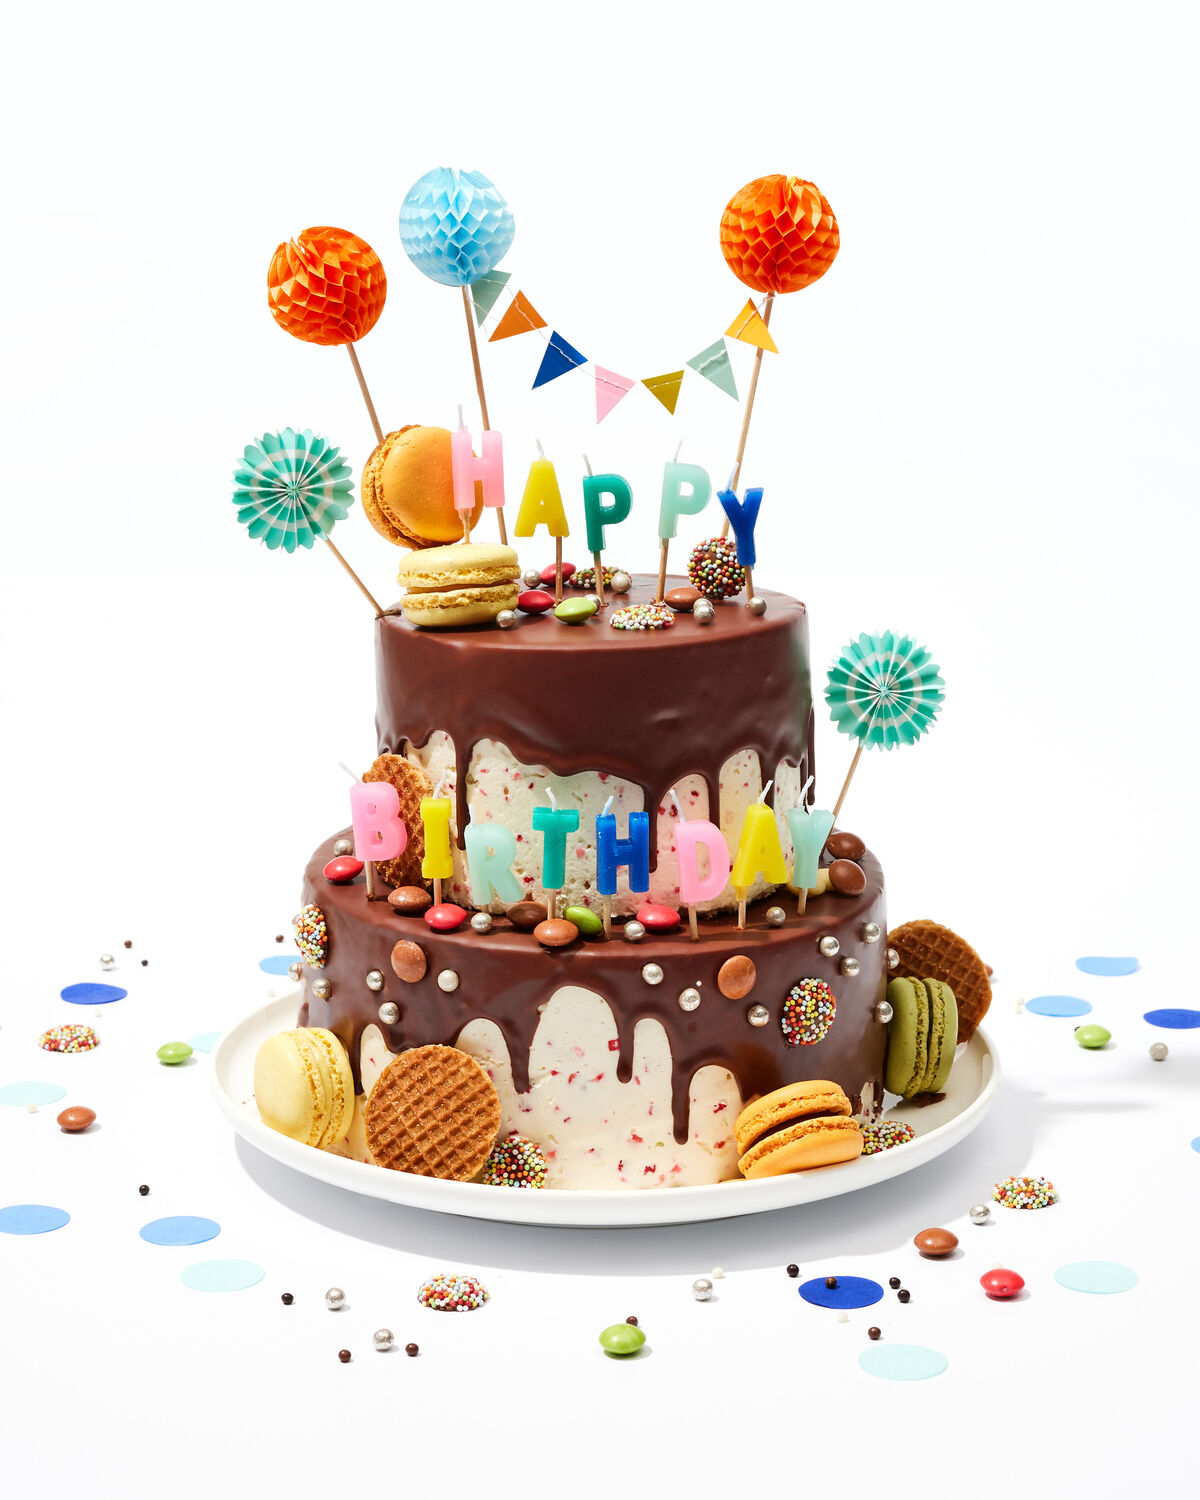 décoration gâteau anniversaire - 200001 - HEMA